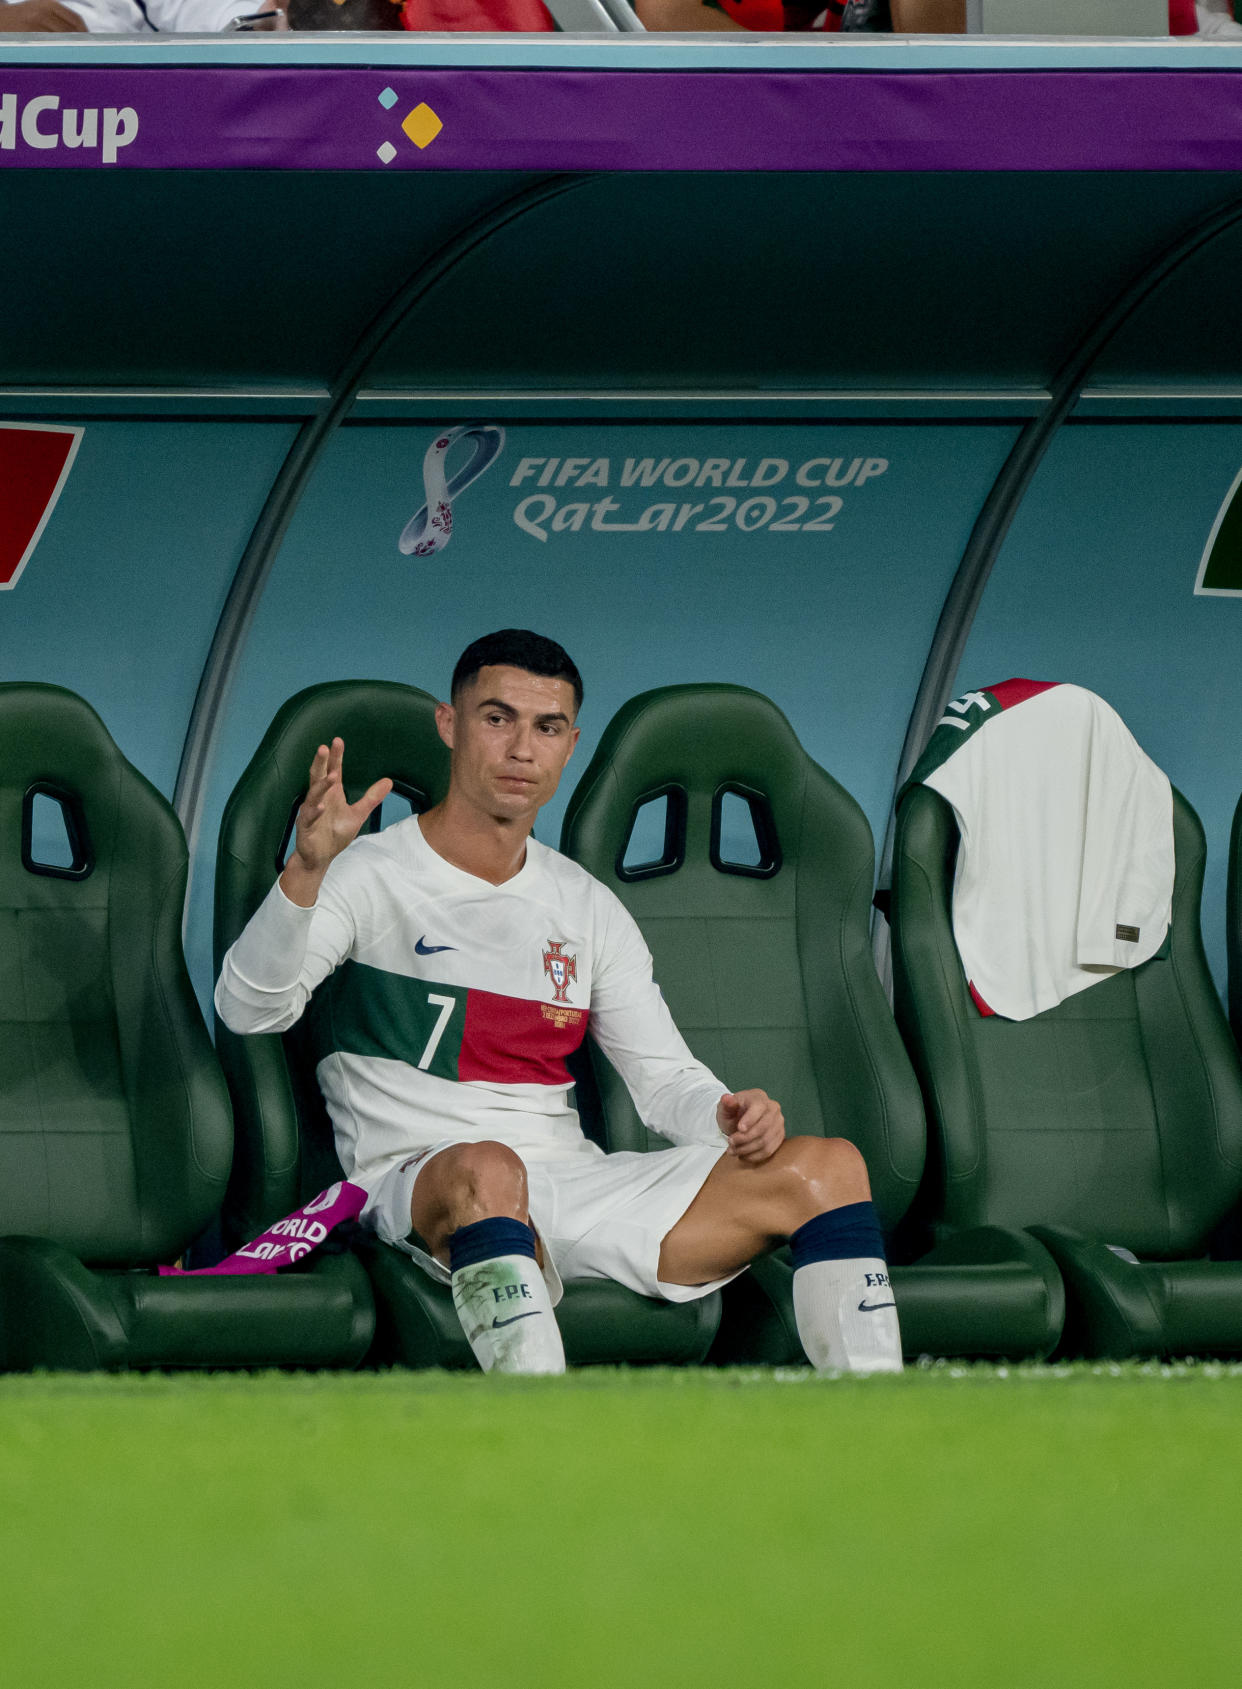 Cristiano Ronaldo no ha sido diferencial en esta Copa del Mundo. (Foto: Marvin Ibo Guengoer - GES Sportfoto/Getty Images)